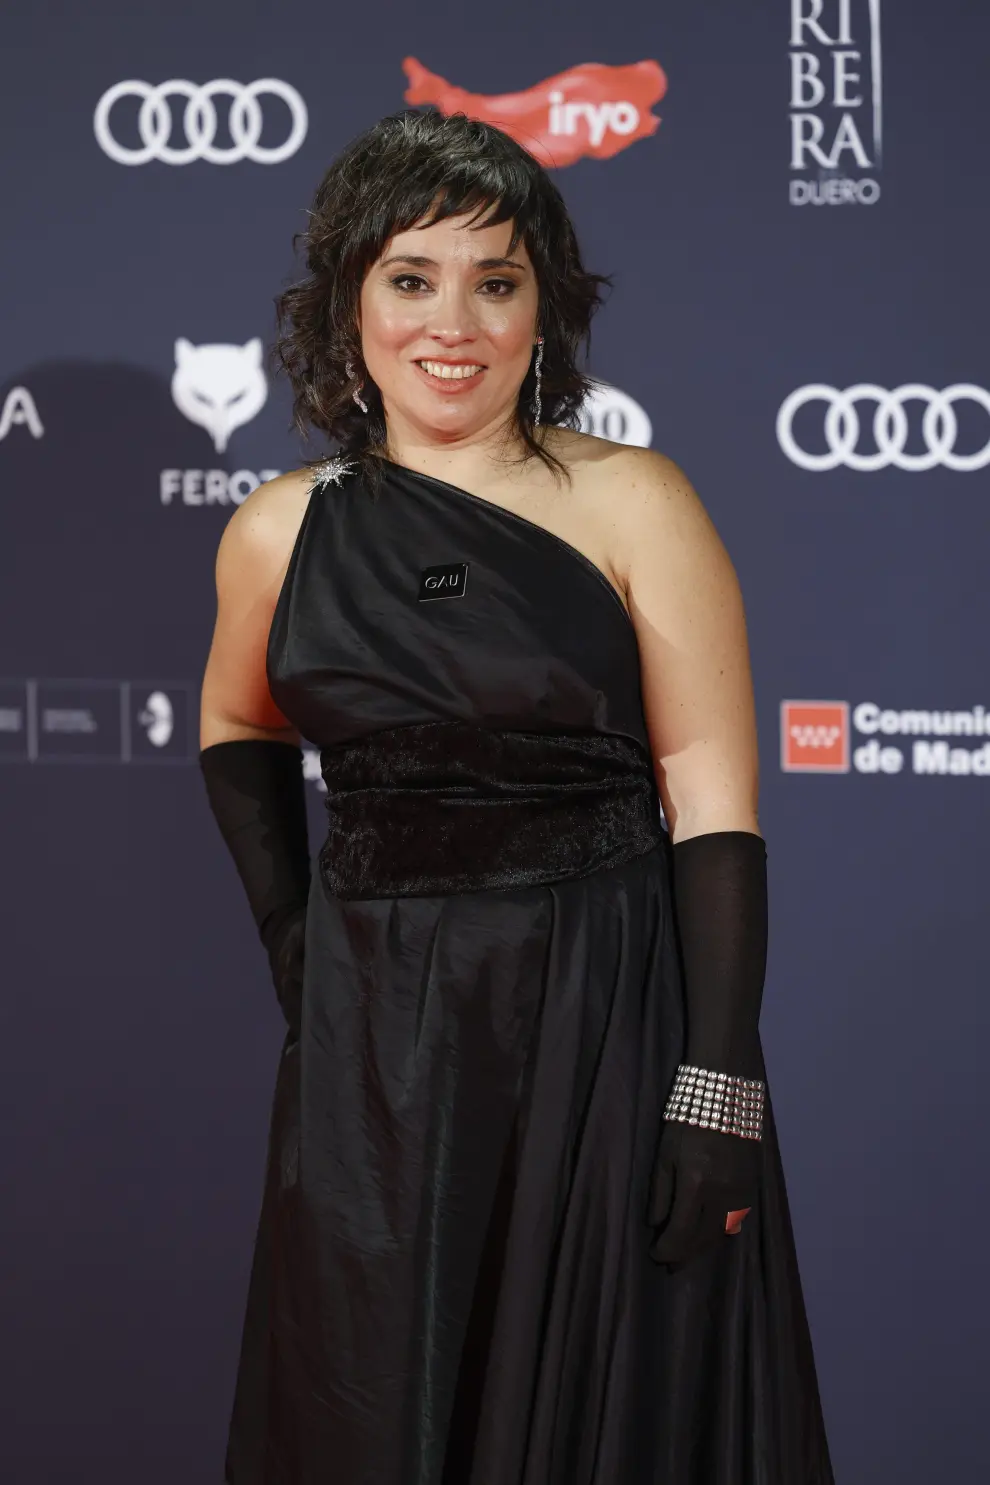 La directora y guionista Claudia Pinto